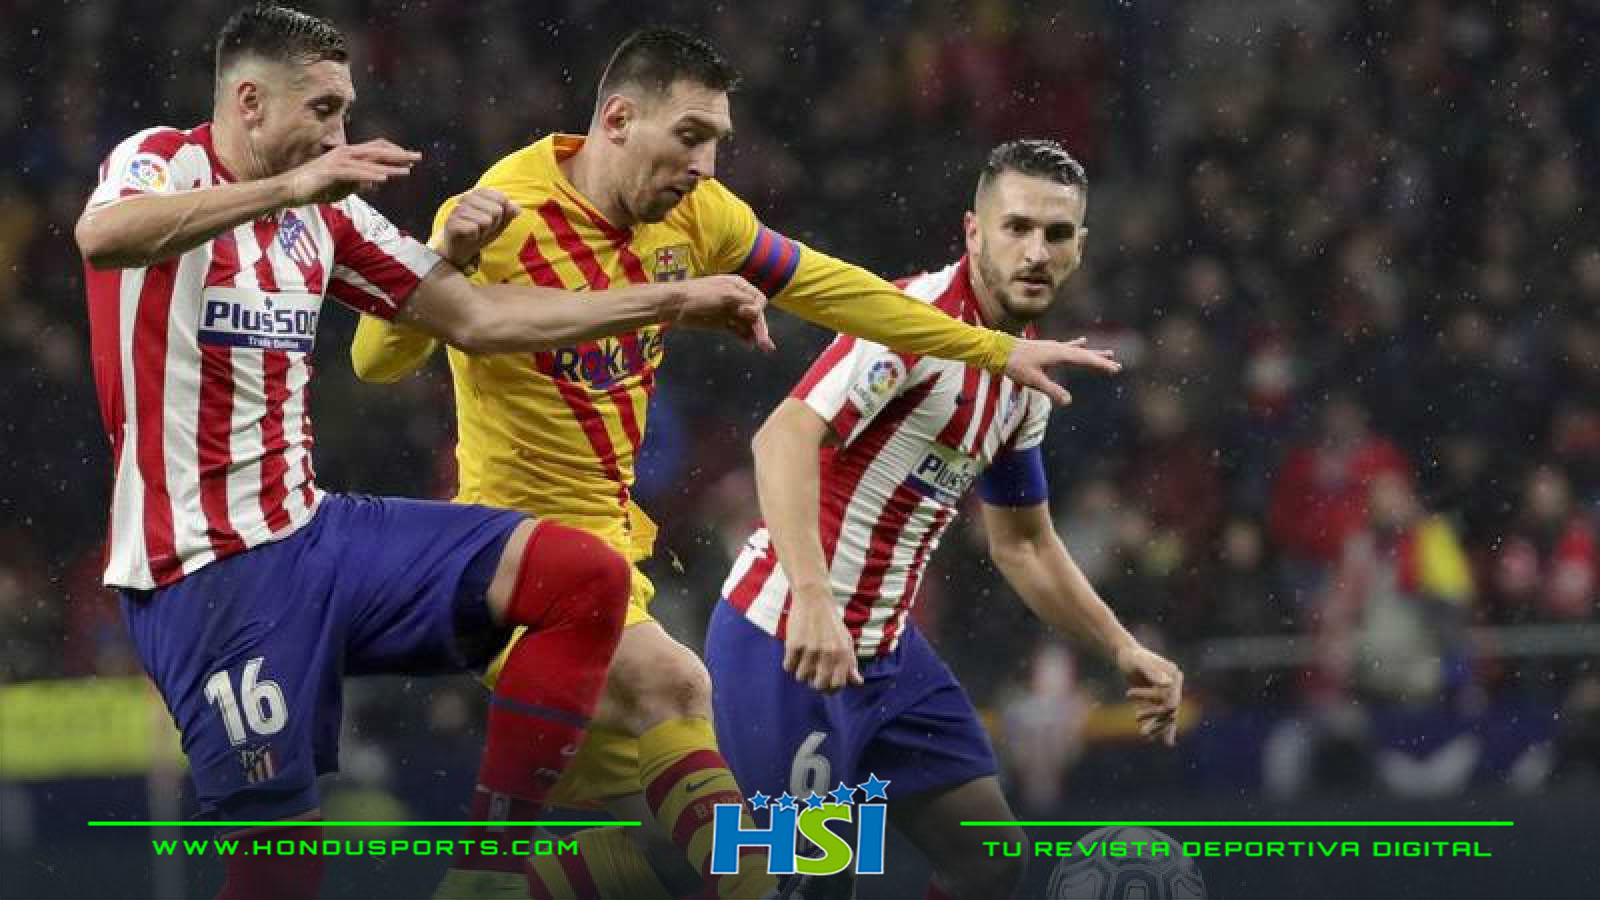 Viva el minuto a minuto del crucial duelo entre Barcelona-Atlético de Madrid